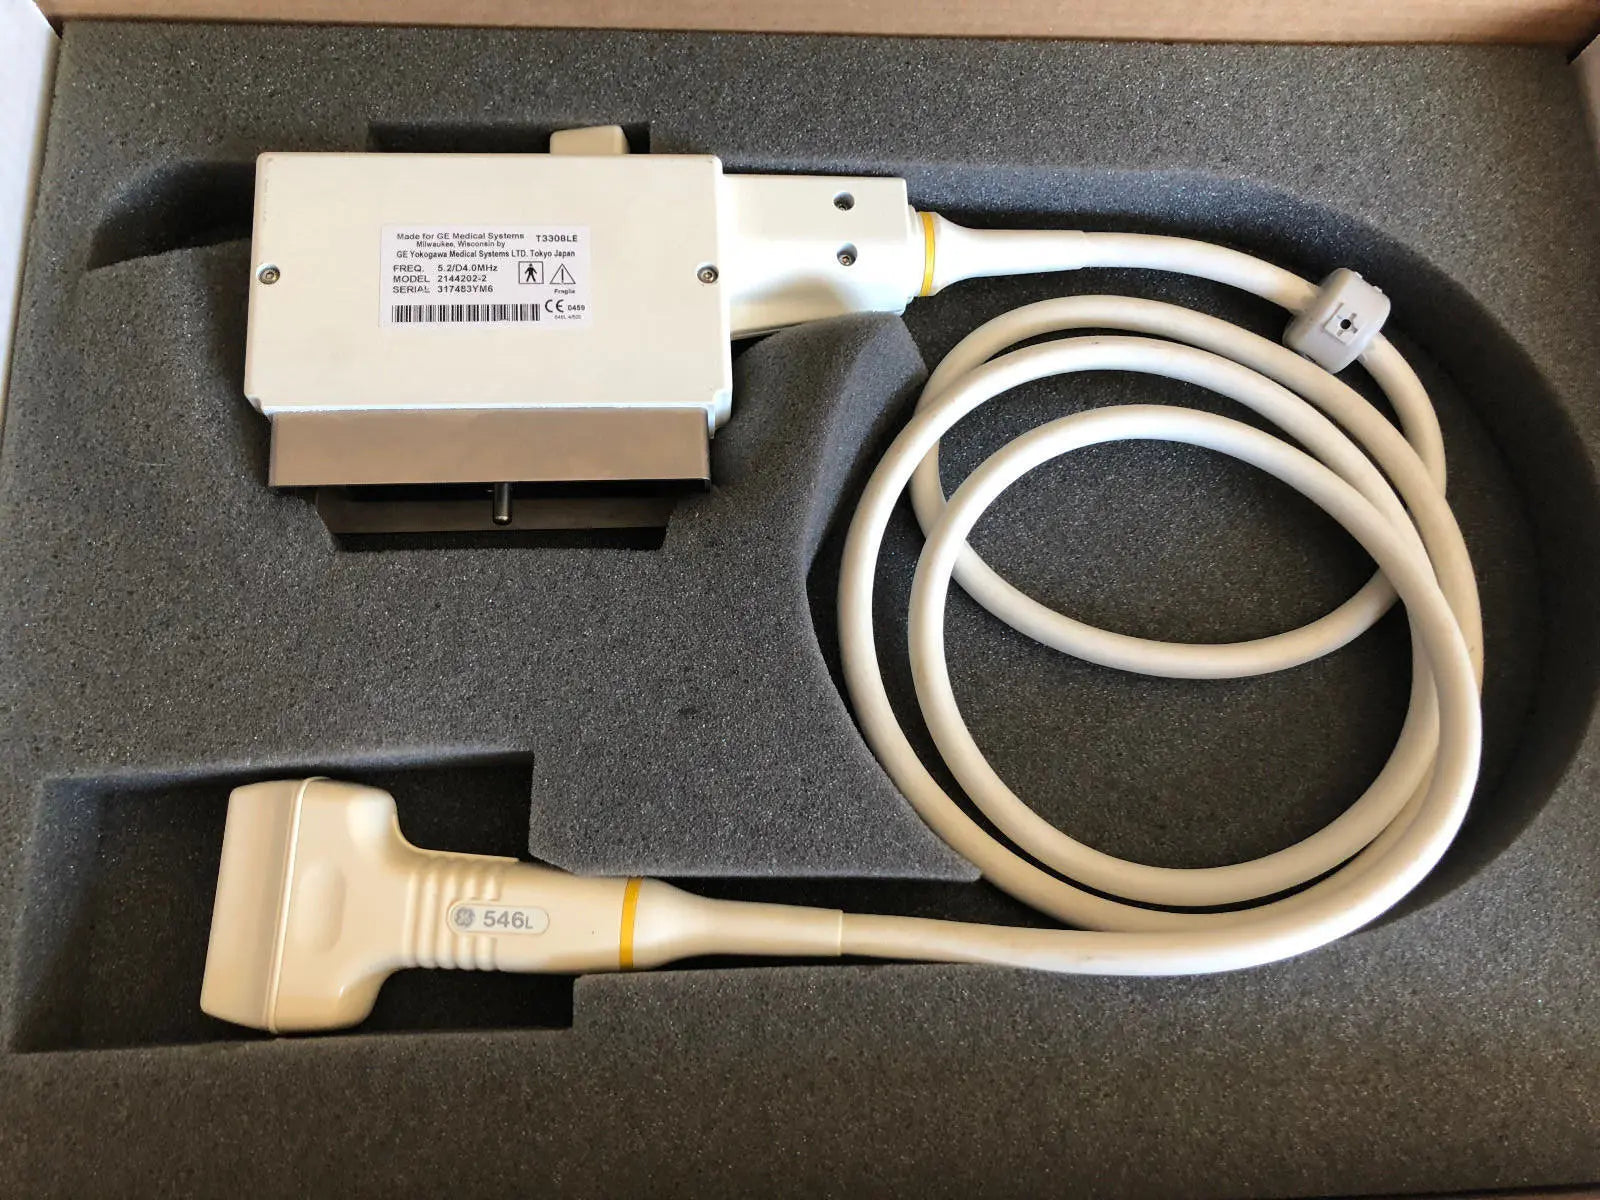 GE 546L ultrasound transducer from a LOGIQ L9